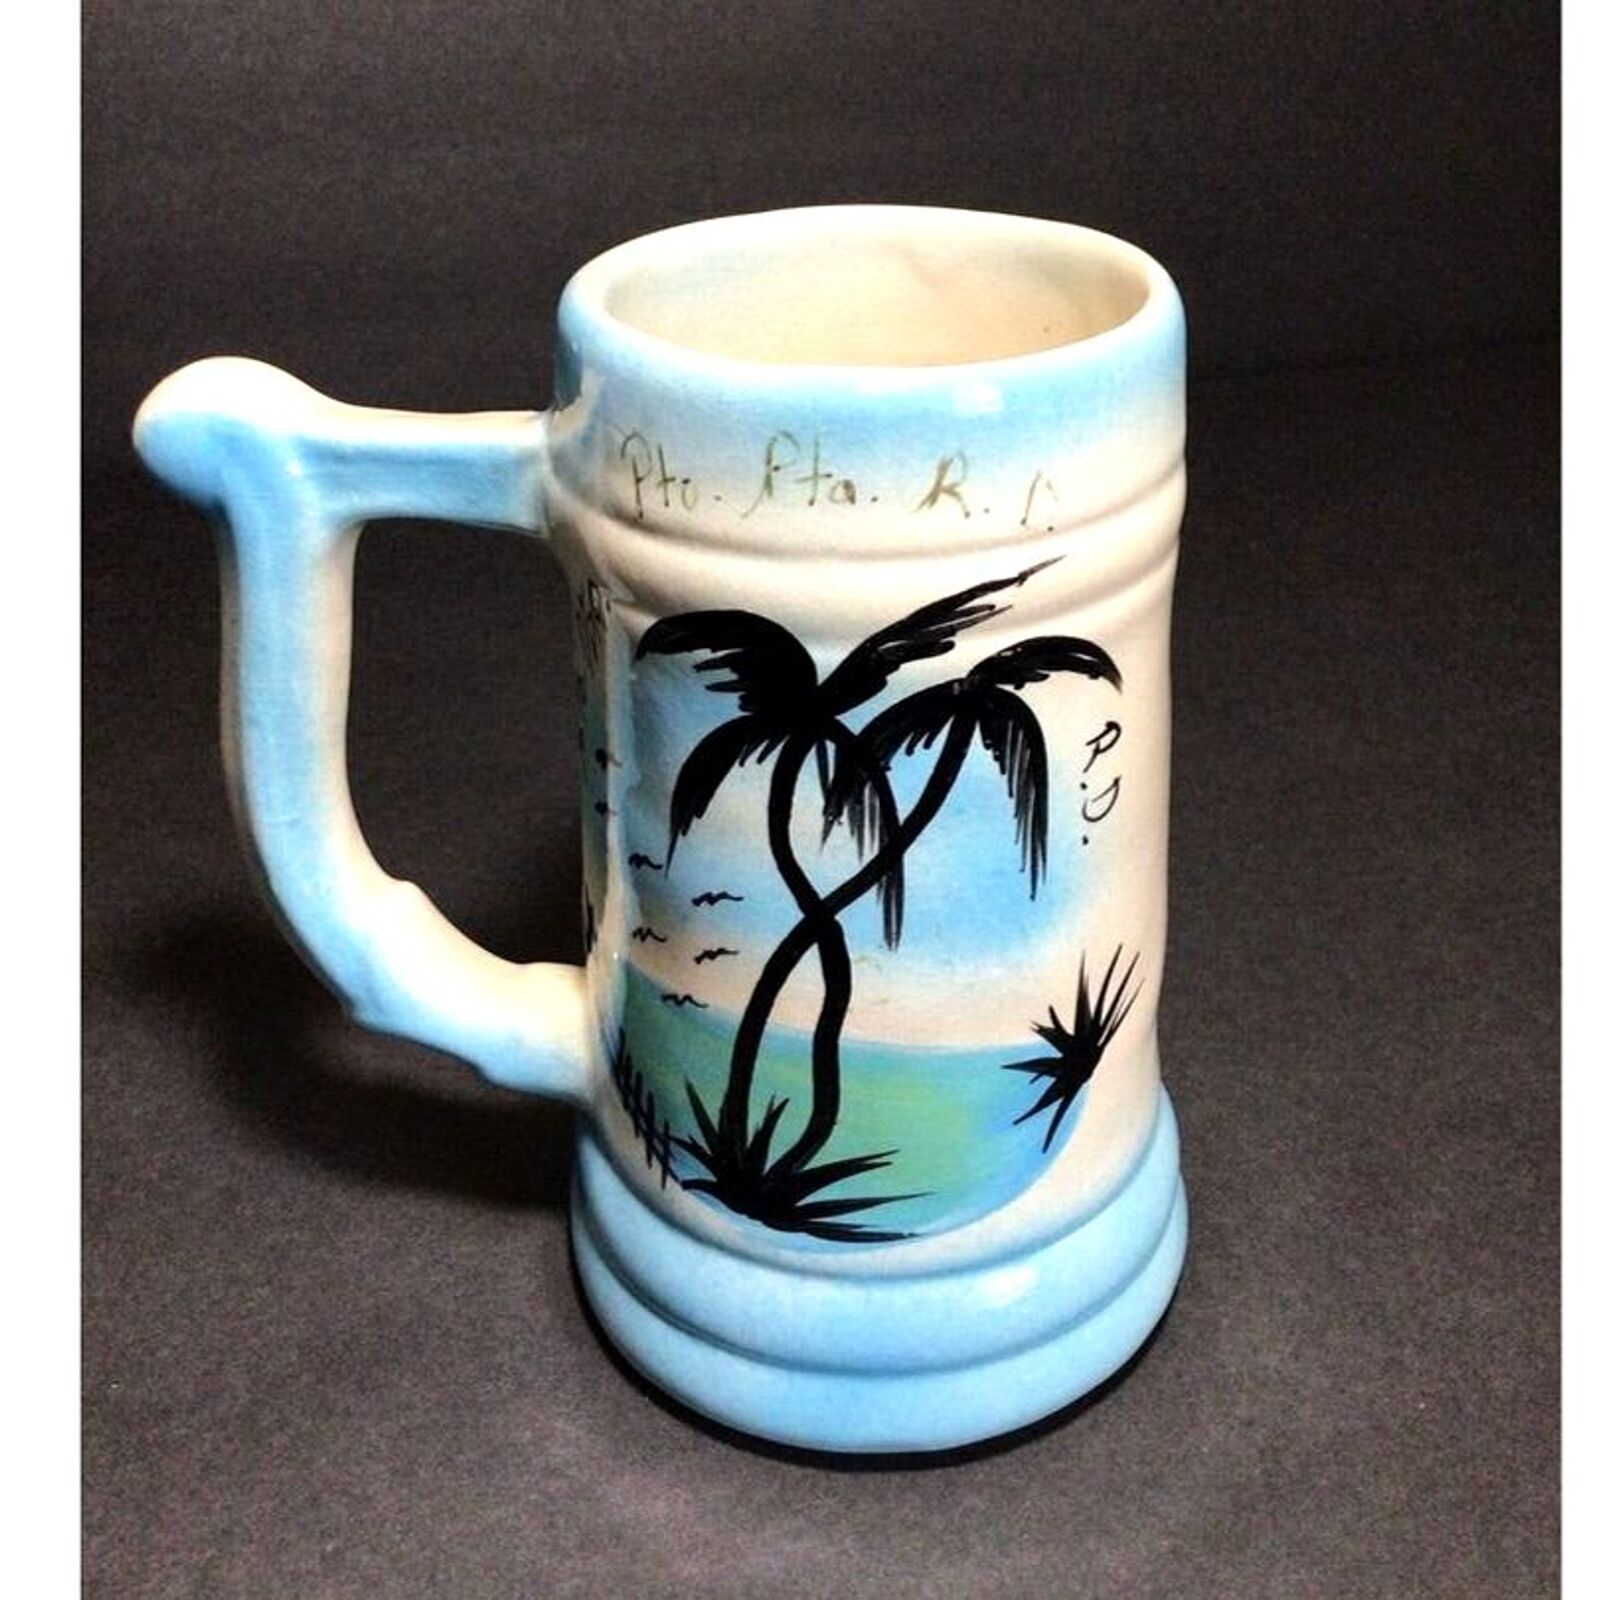 Vintage Cup Republic Dominic Souvenir coffee mug Retro